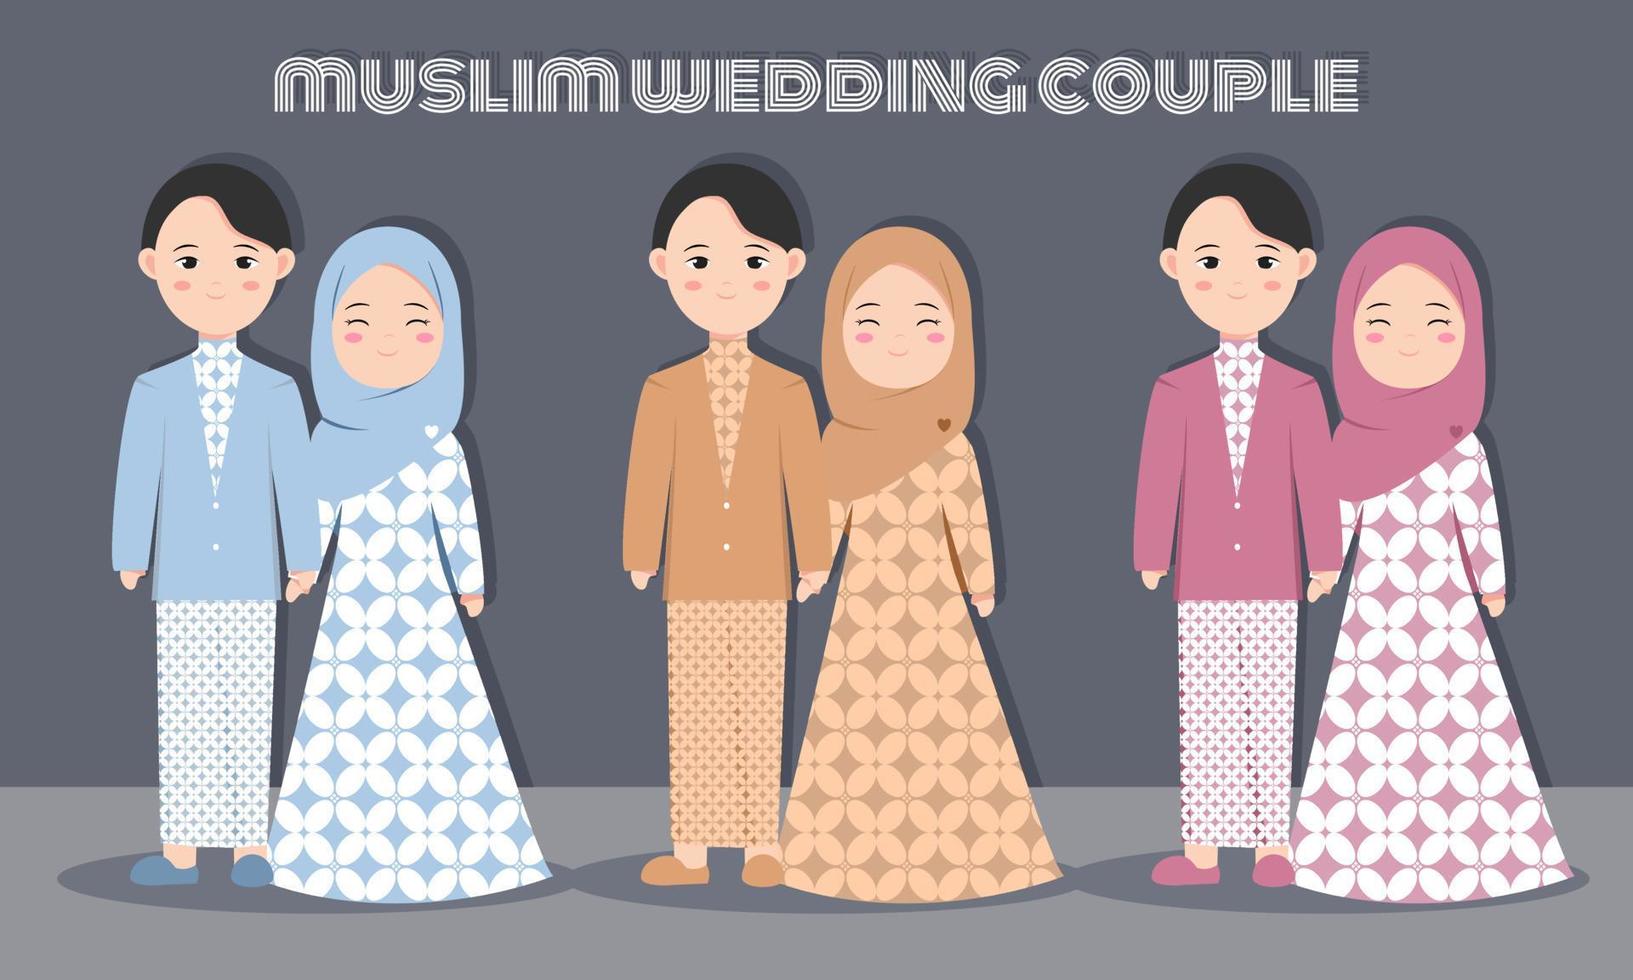 joli jeu de caractères de couple musulman avec une robe batik pour une carte d'invitation de mariage ou de fiançailles. illustration vectorielle en dessin animé d'un couple amoureux vecteur